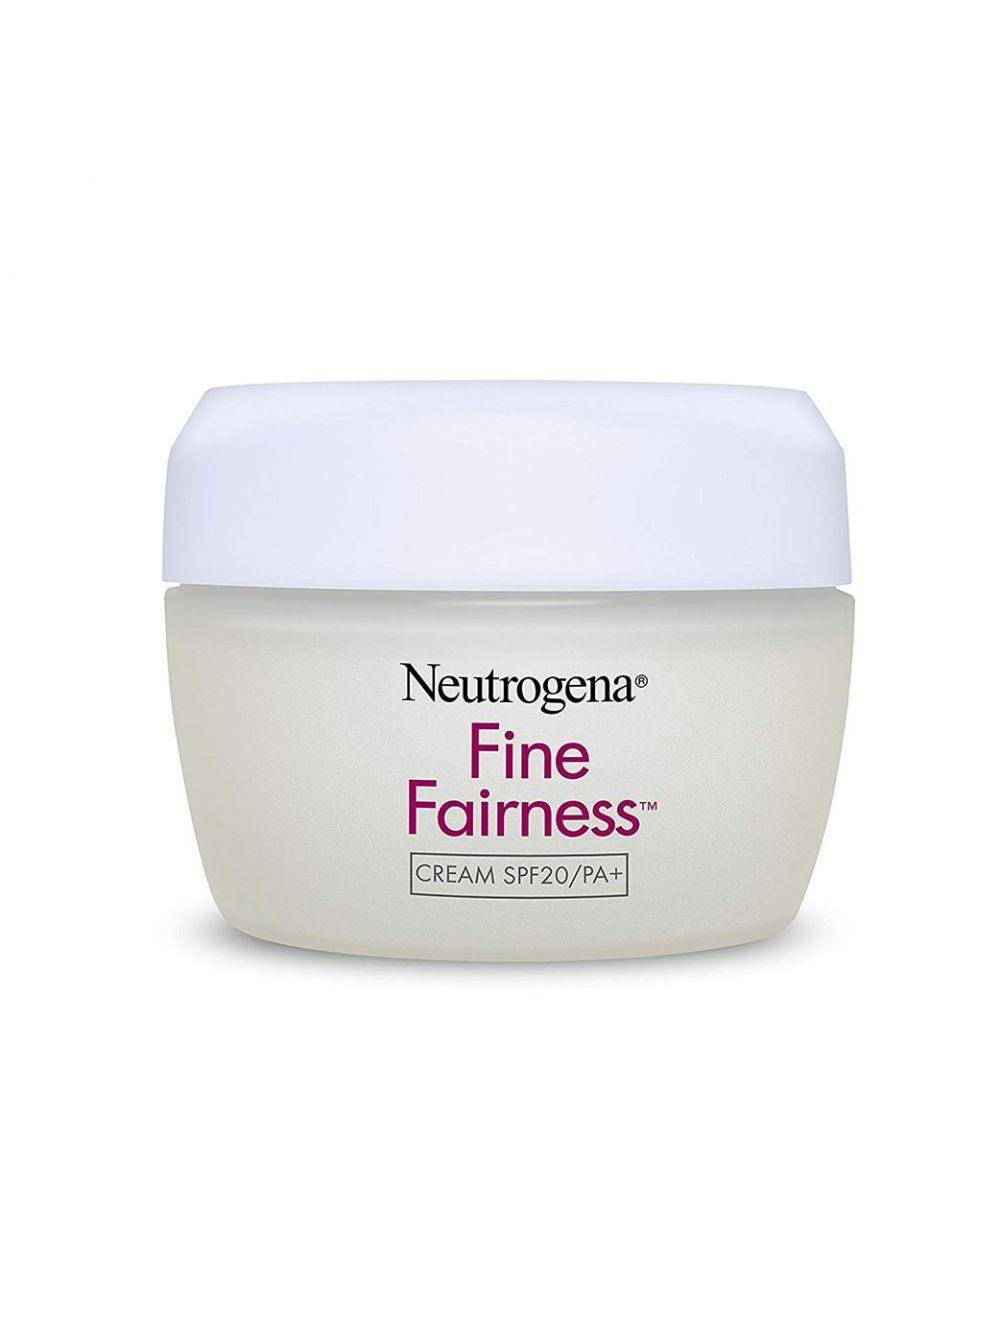 Neutrogena Fine Fairness Cream SPF 20/PA+ (50gm) - Niram